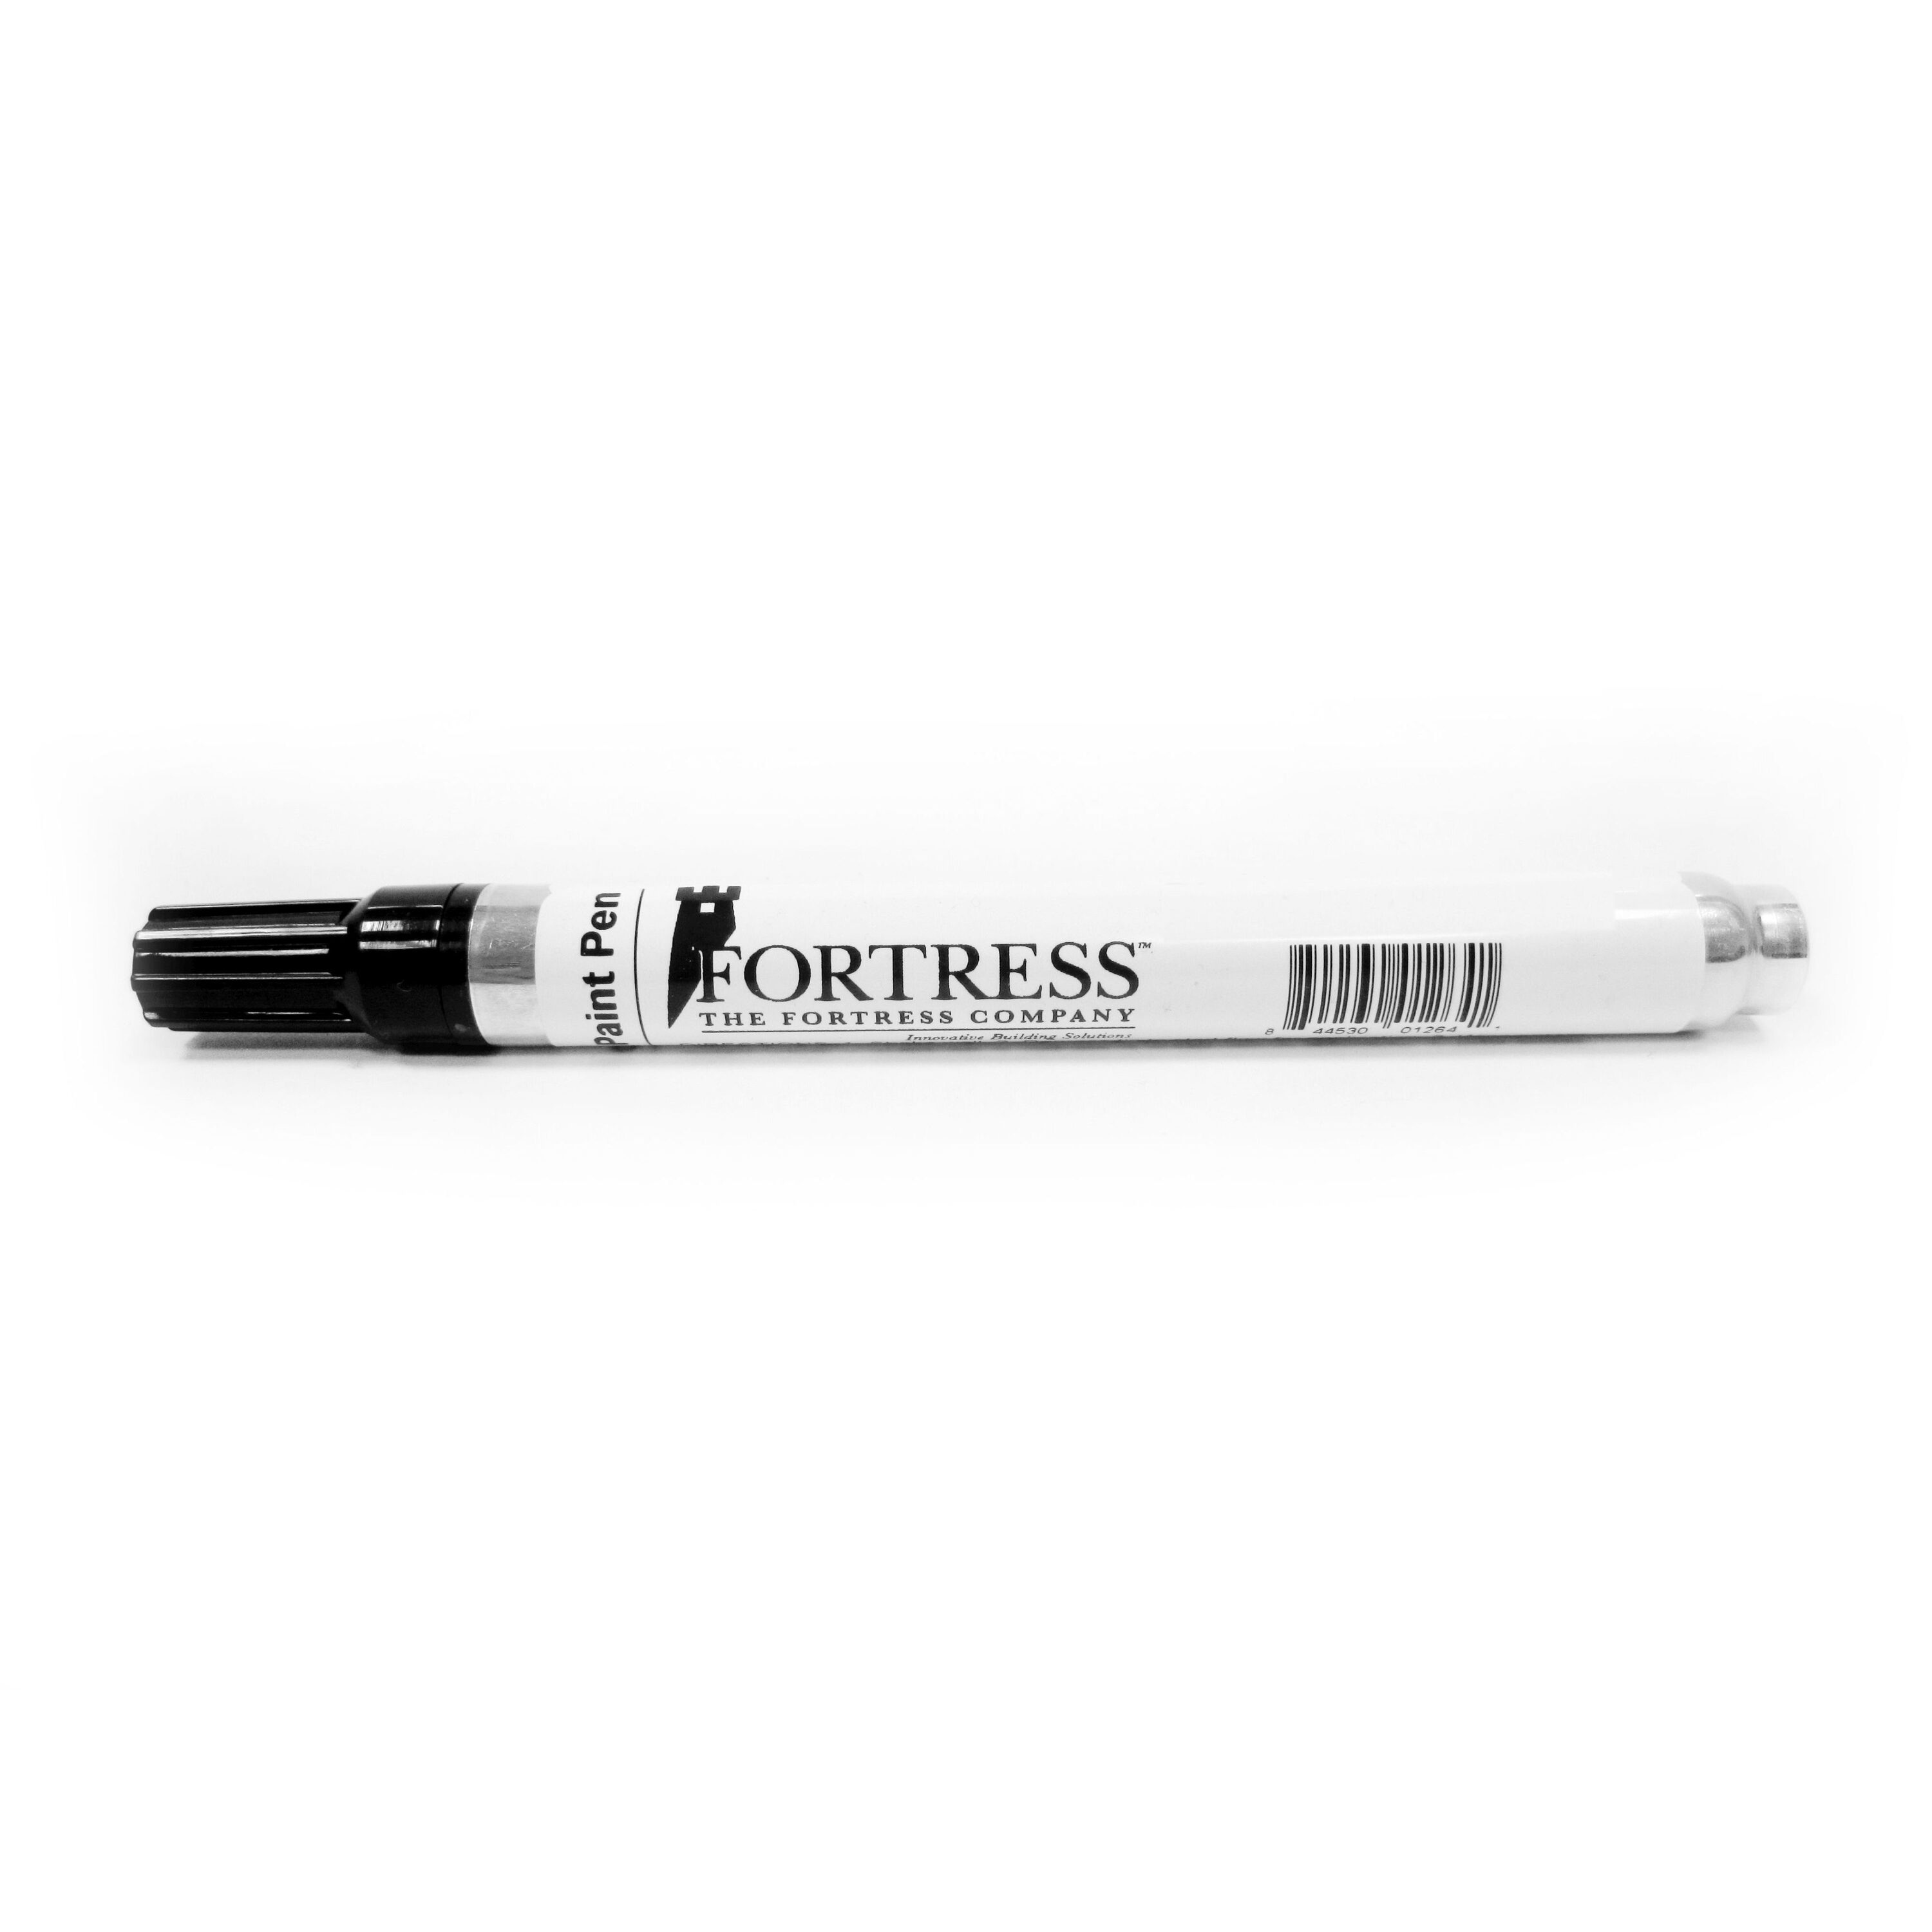 Ultra-Mark 2 Black Paint Pen, School Bus Parts for Sale